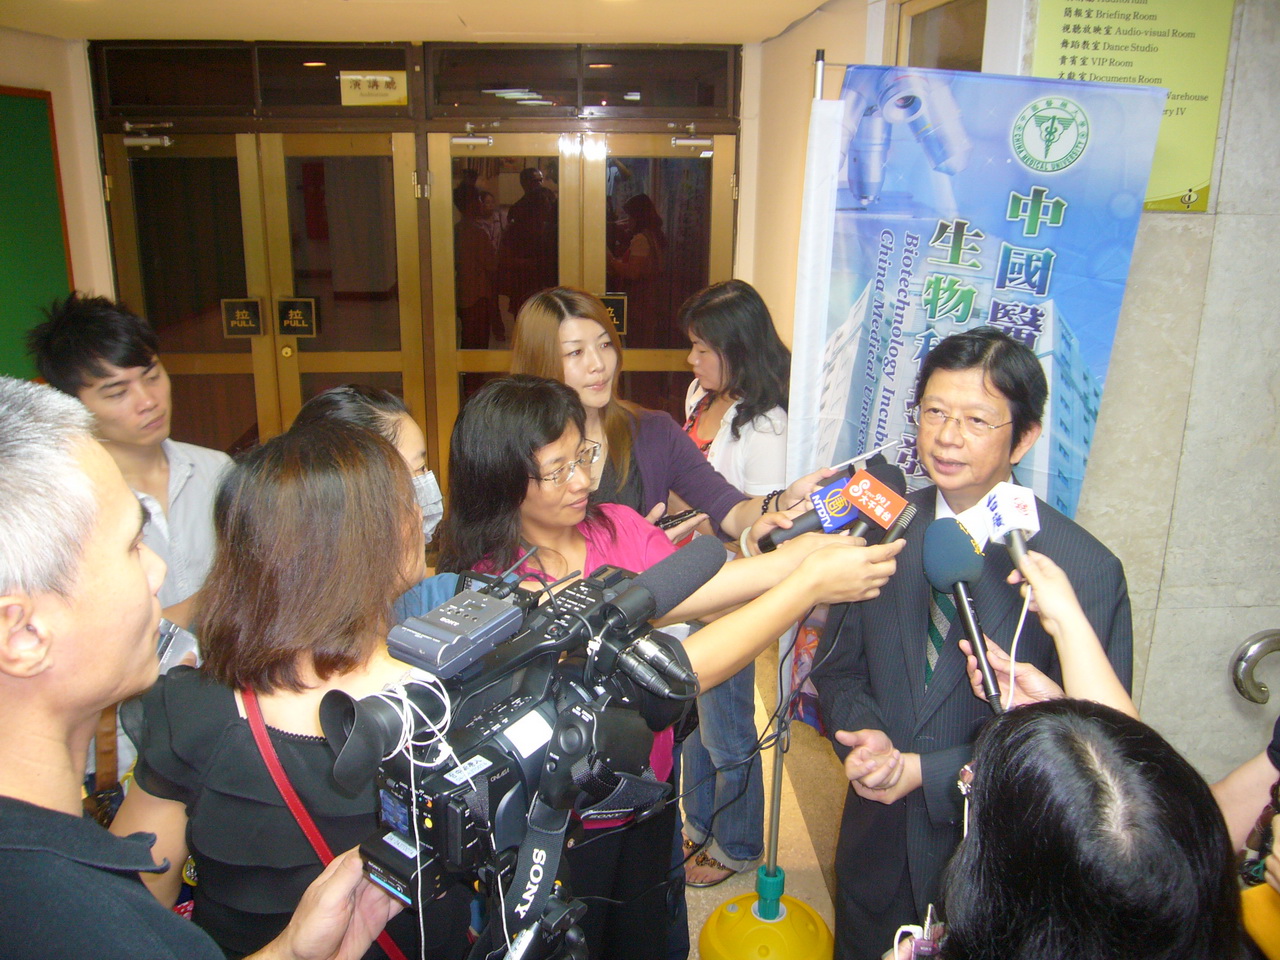 創新開辦「庶民健康講座」的推手陳偉德副校長是媒體追訪的焦點人物